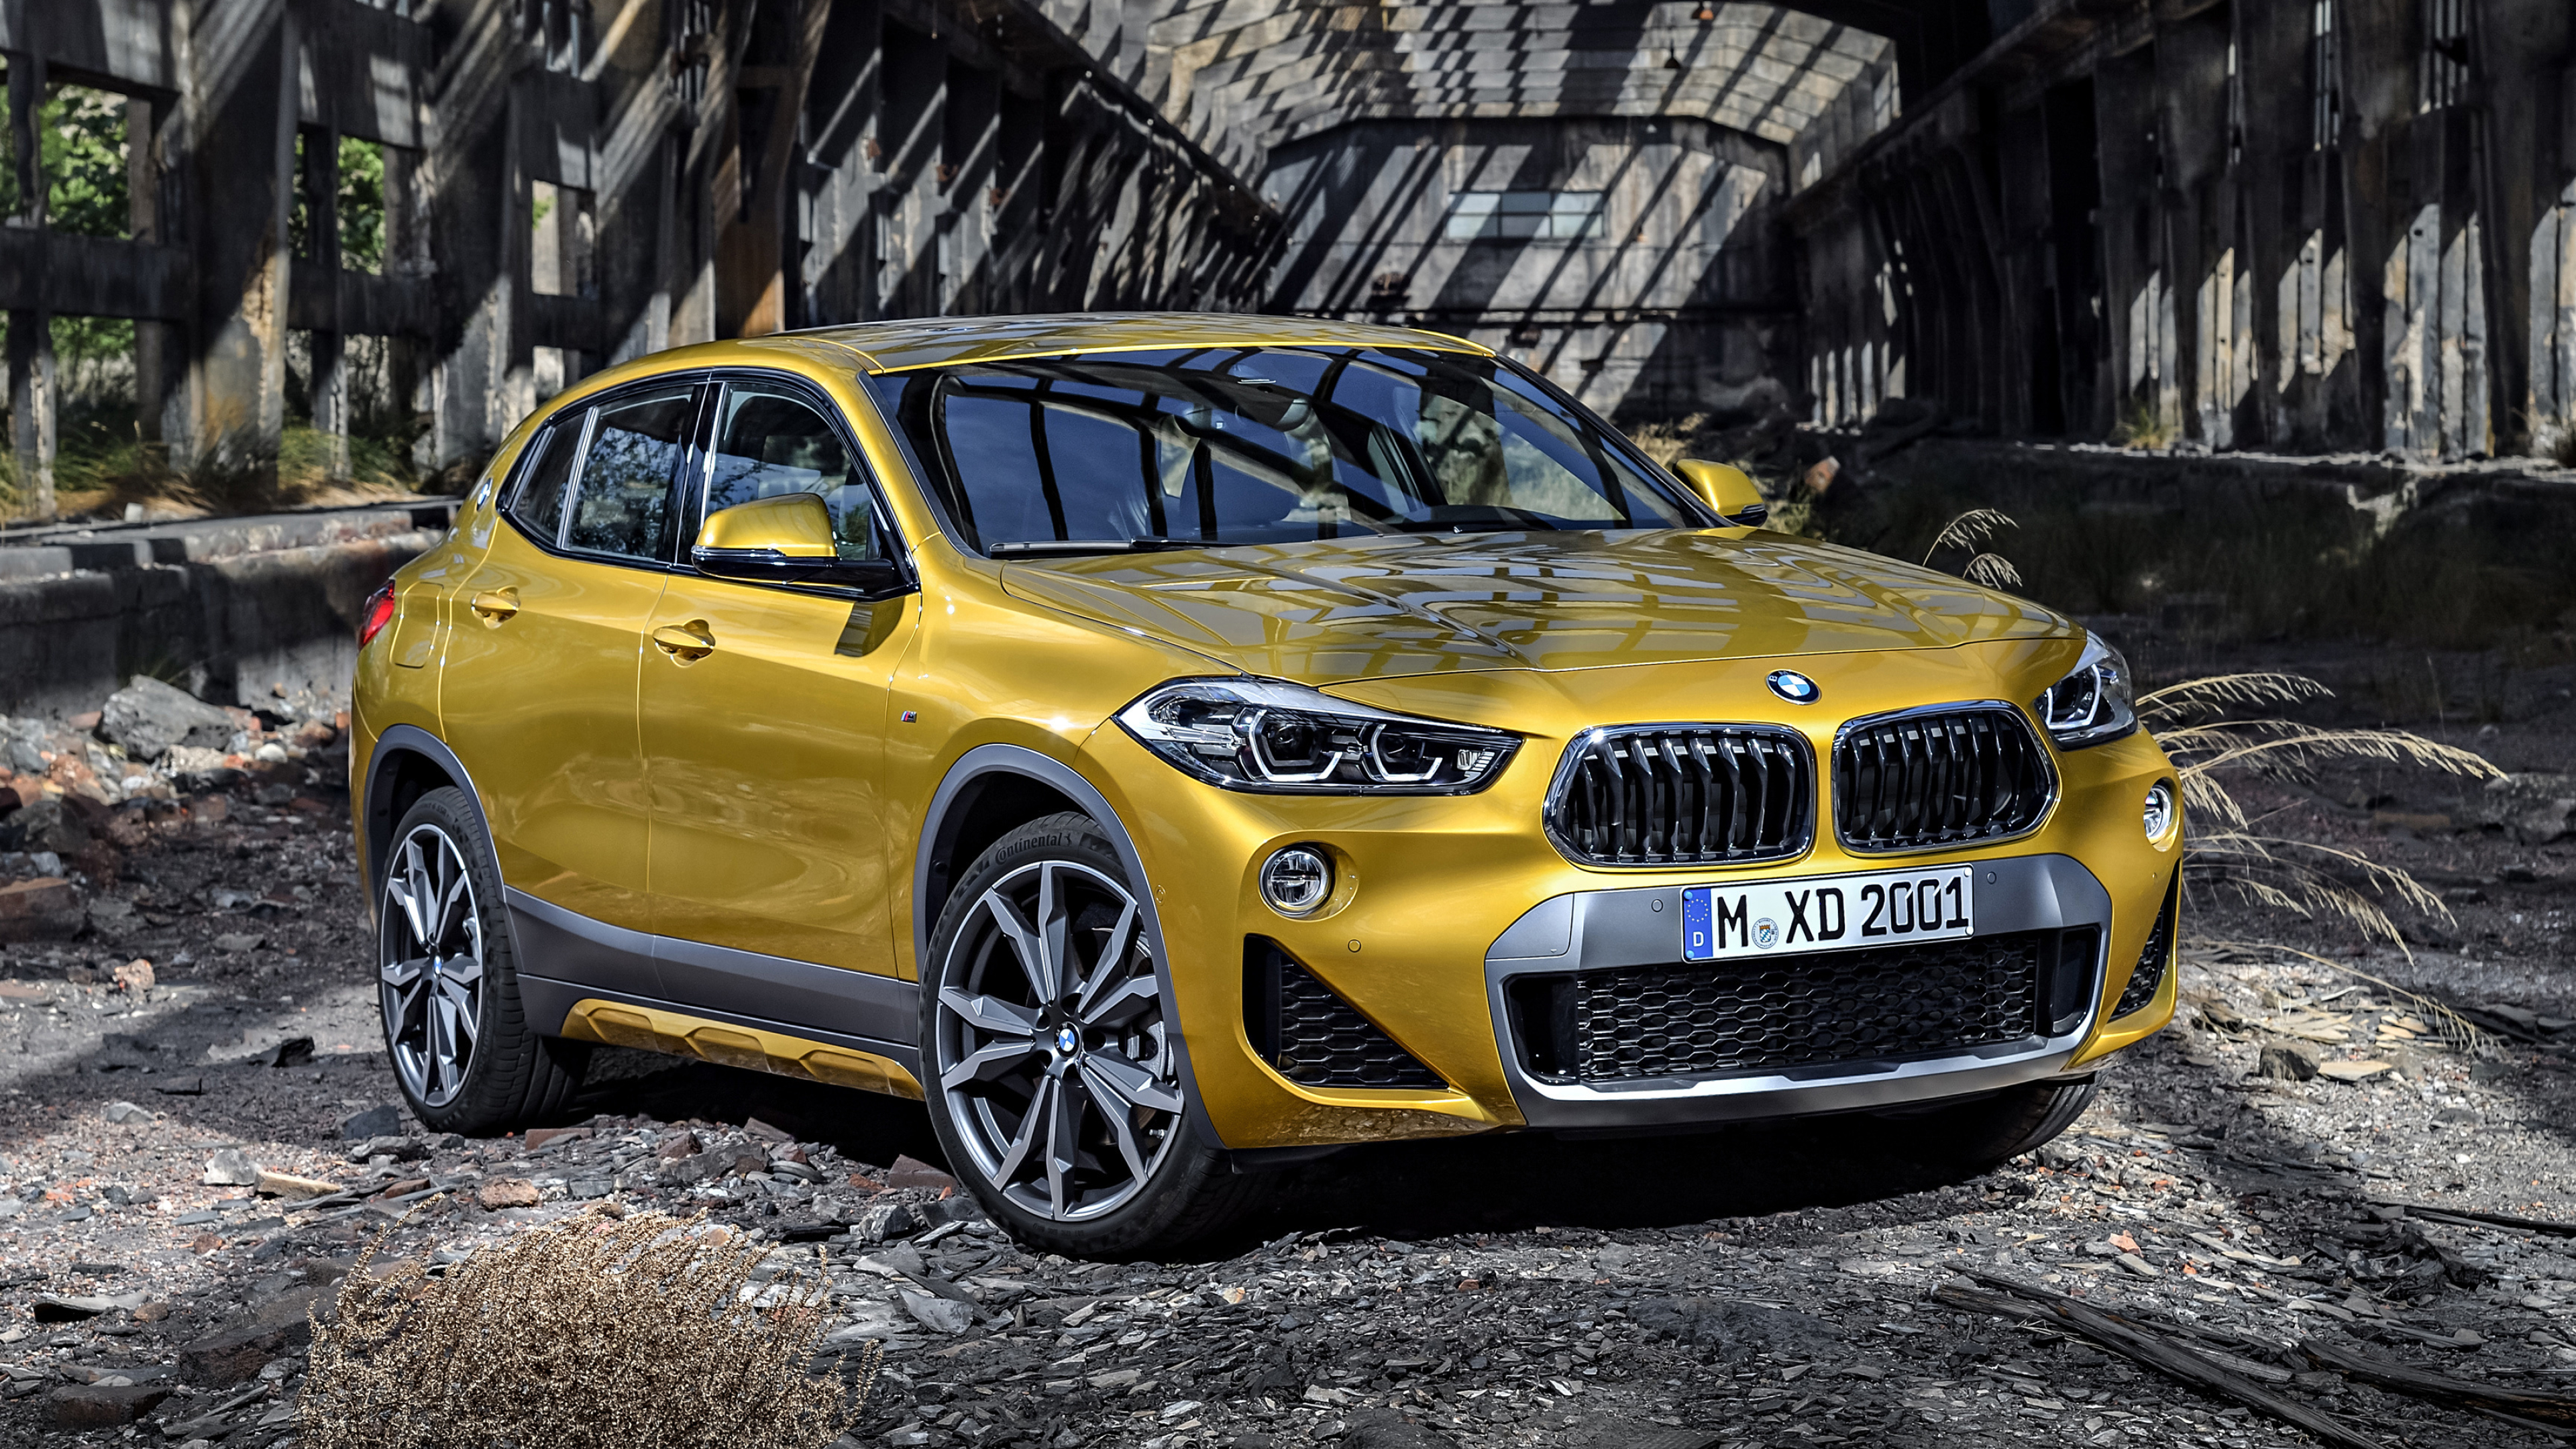 BMW X2, Cars desktop wallpapers, 4K Ultra HD, Unforgettable presence, 3840x2160 4K Desktop